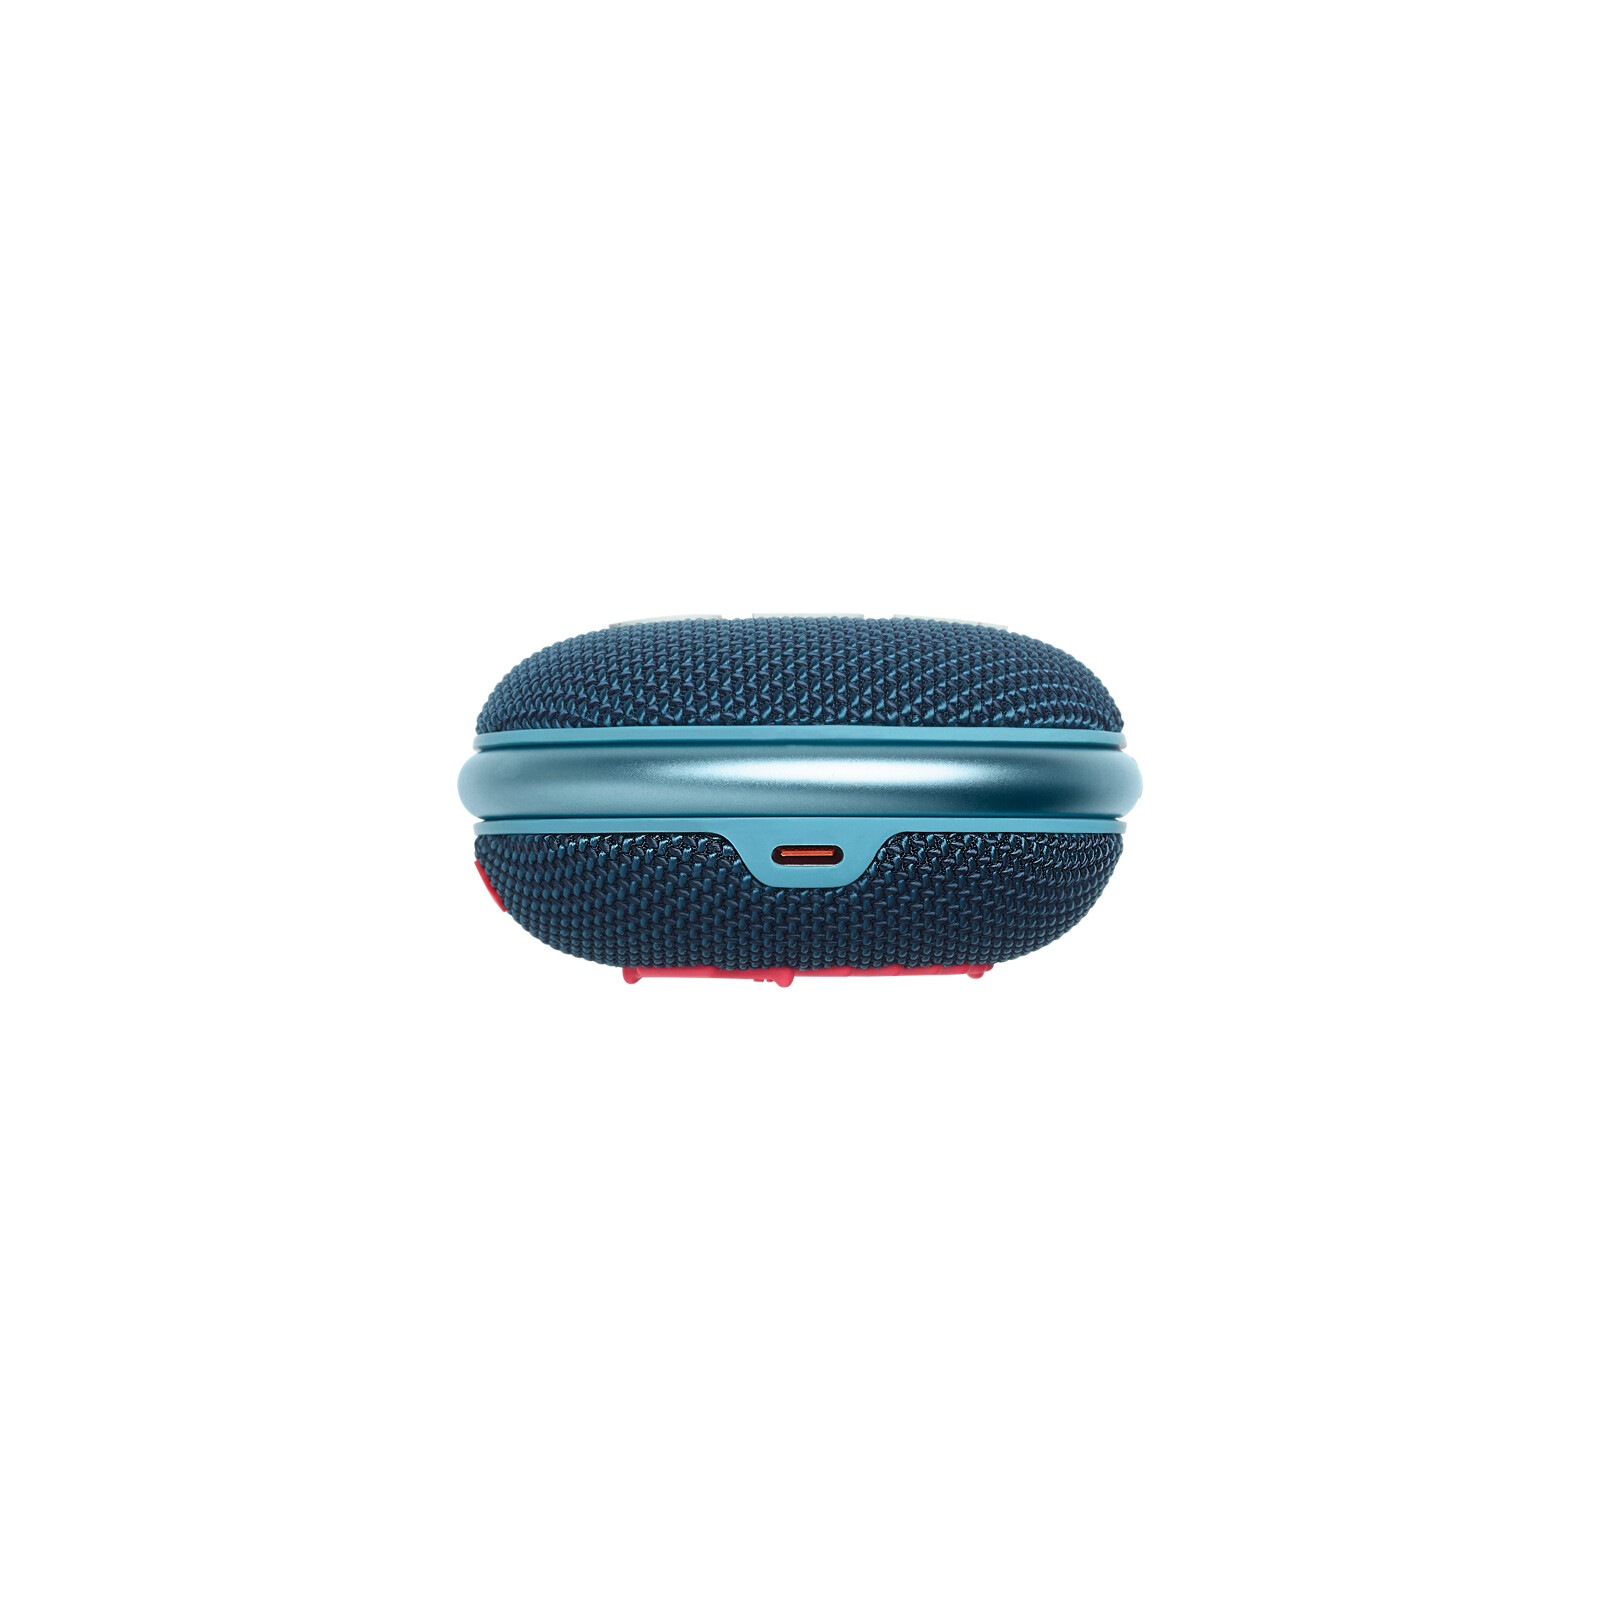 JBL Clip4 Bluetooth-Lautsprecher mit Karabinerhaken blau/pink